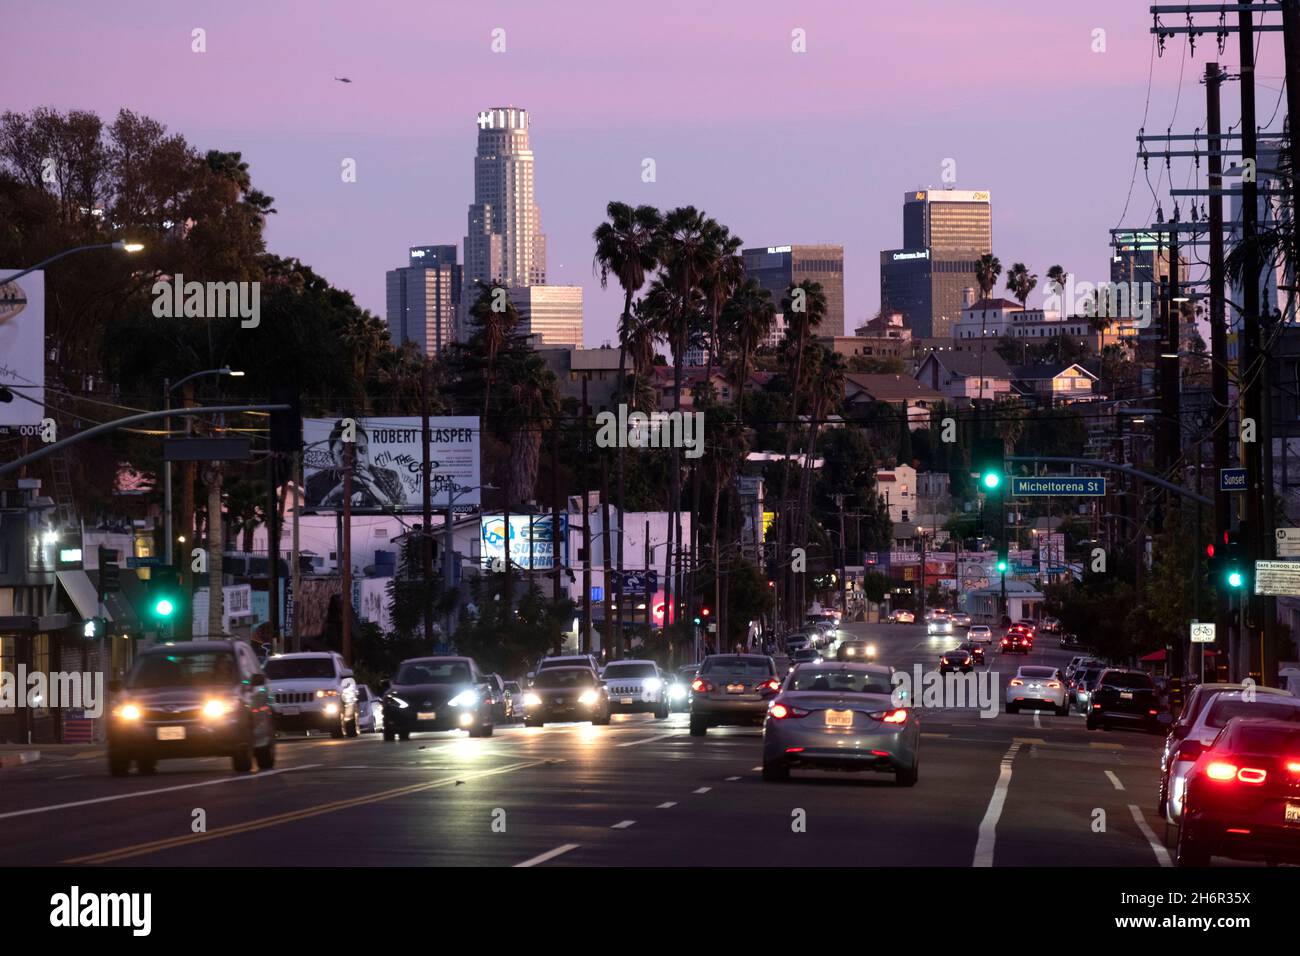 Cielo rosa al atardecer mirando hacia Sunset Boulevard en Silver Lake hacia el barrio de Echo Park y el centro de Los Angeles Foto de stock